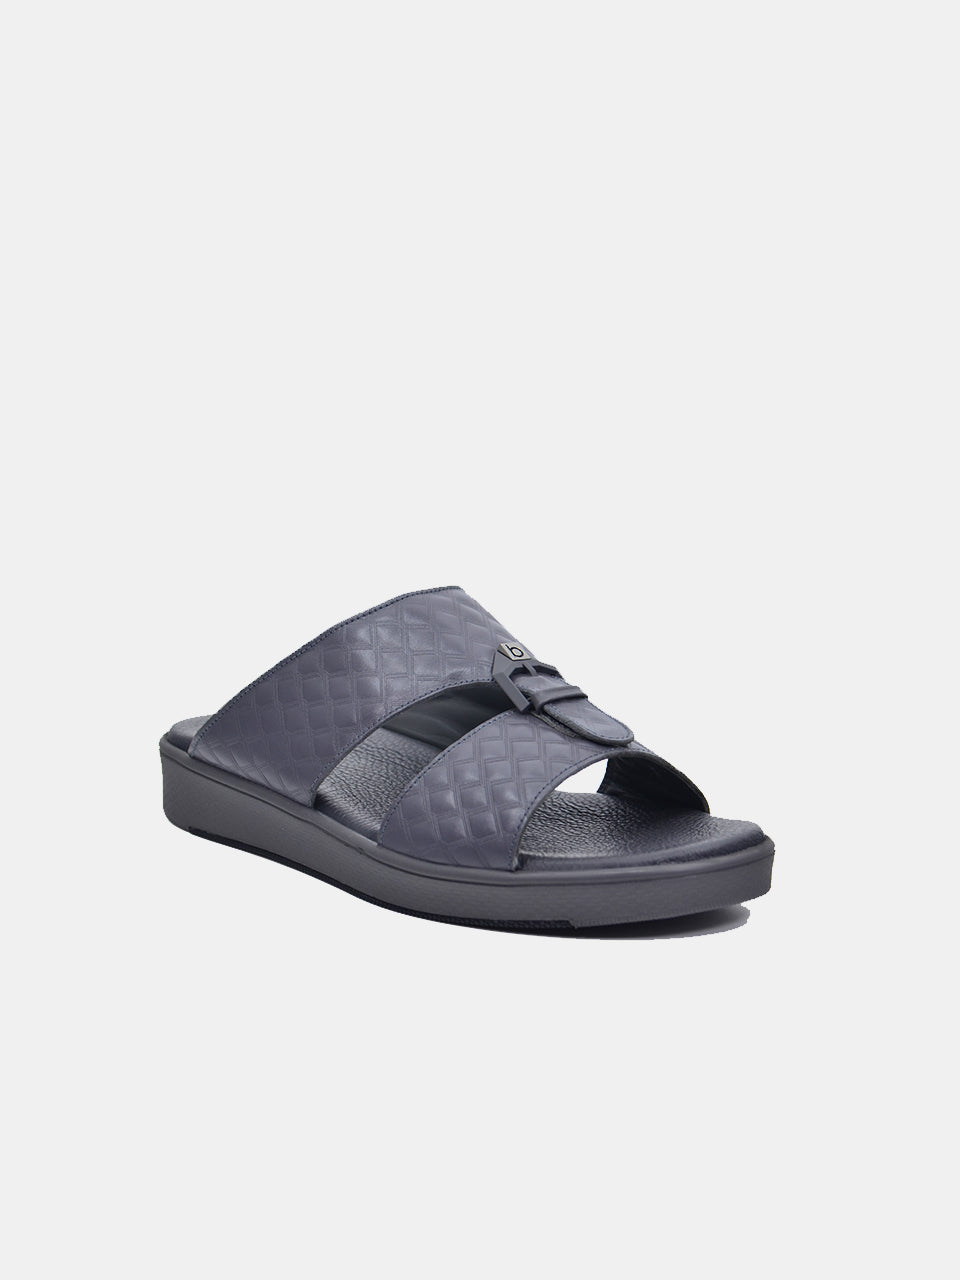 Barjeel Uno B-09 Men's Arabic Sandals #color_Grey